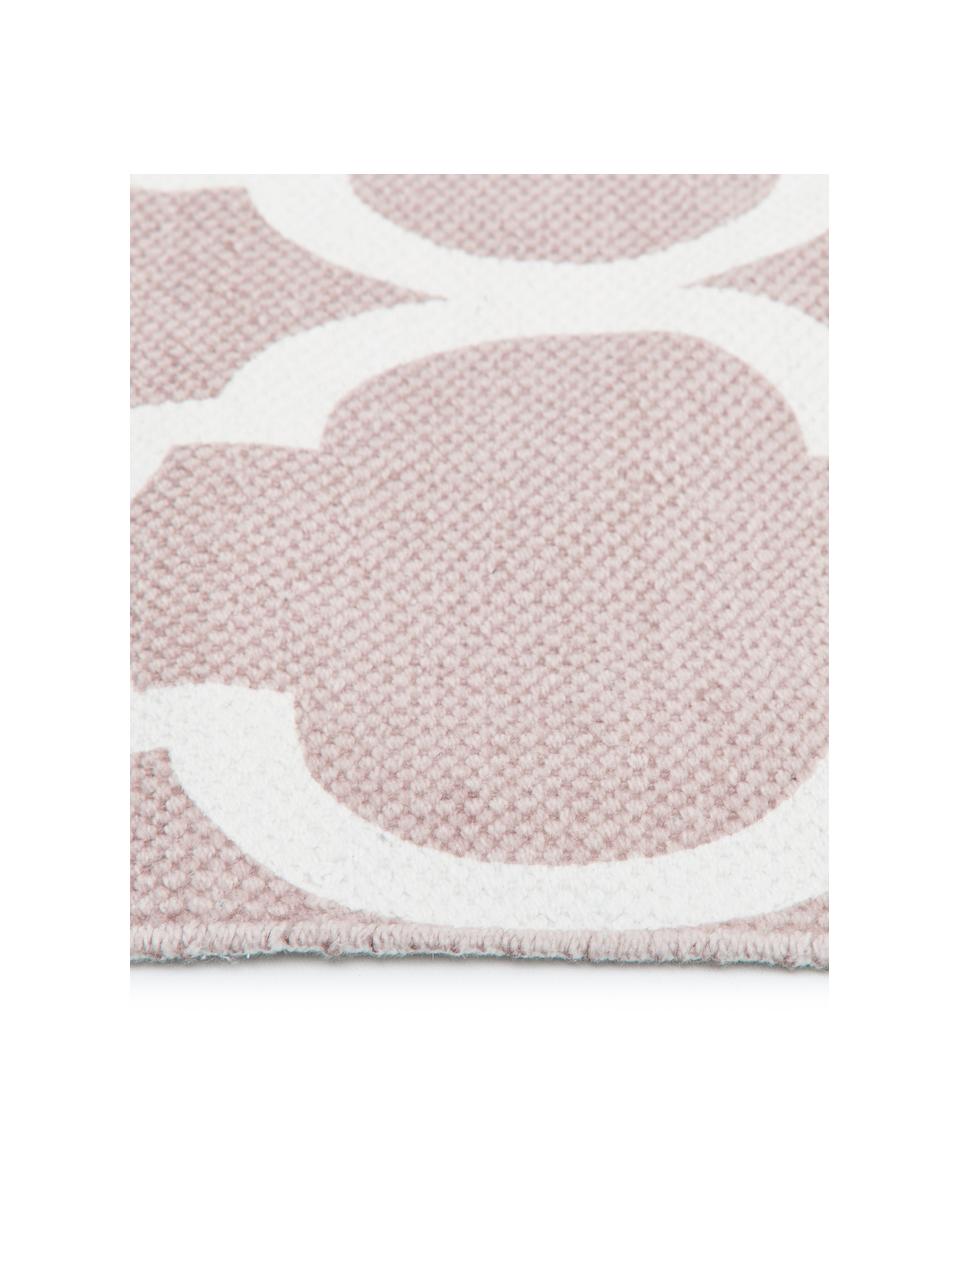 Dünner Baumwollteppich Amira in Rosa/Weiß, handgewebt, 100% Baumwolle, Rosa, Cremeweiß, B 160 x L 230 cm (Größe M)